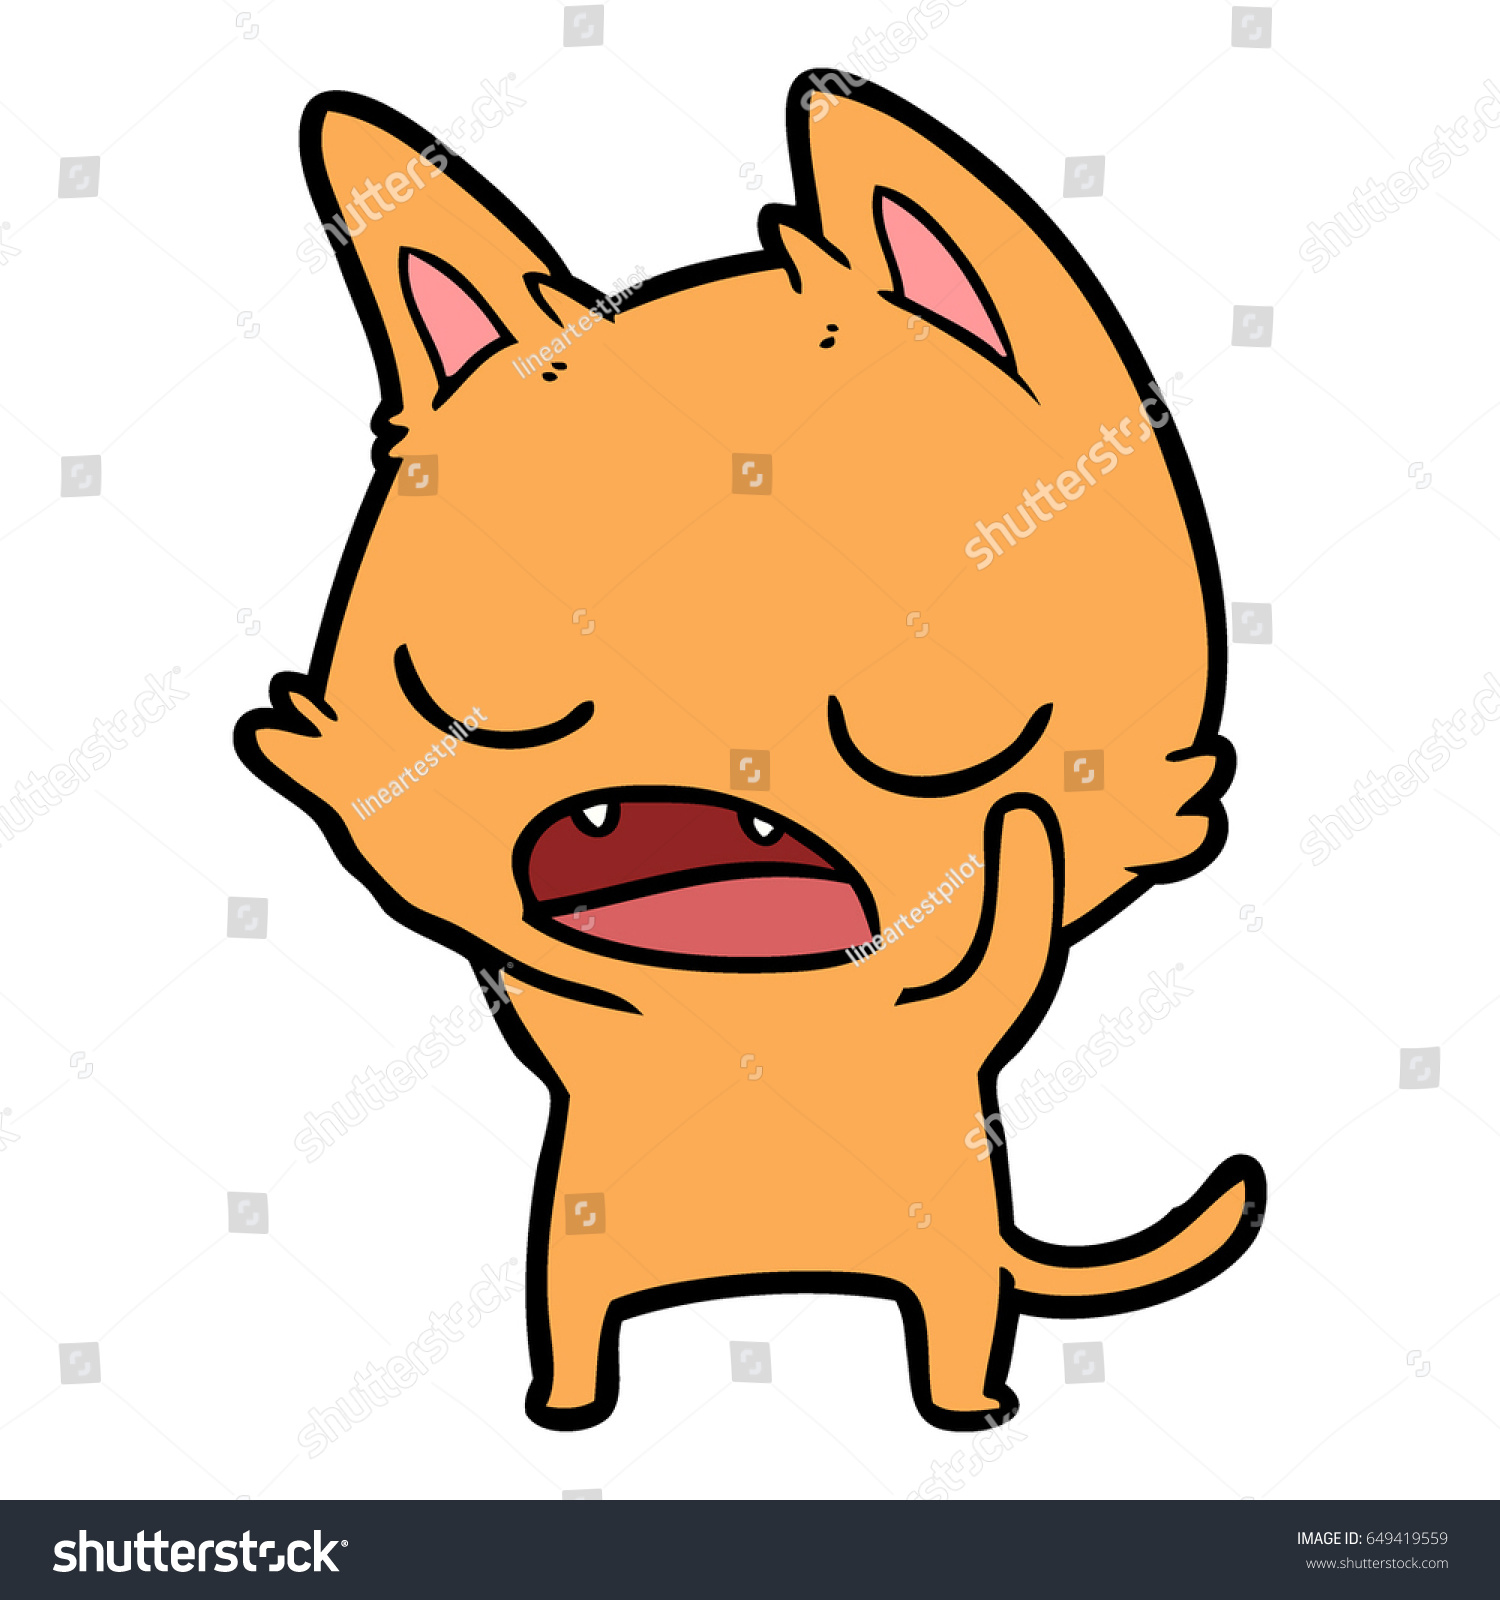 Talking Cat Cartoon Stock Vector 649419559 Shutterstock